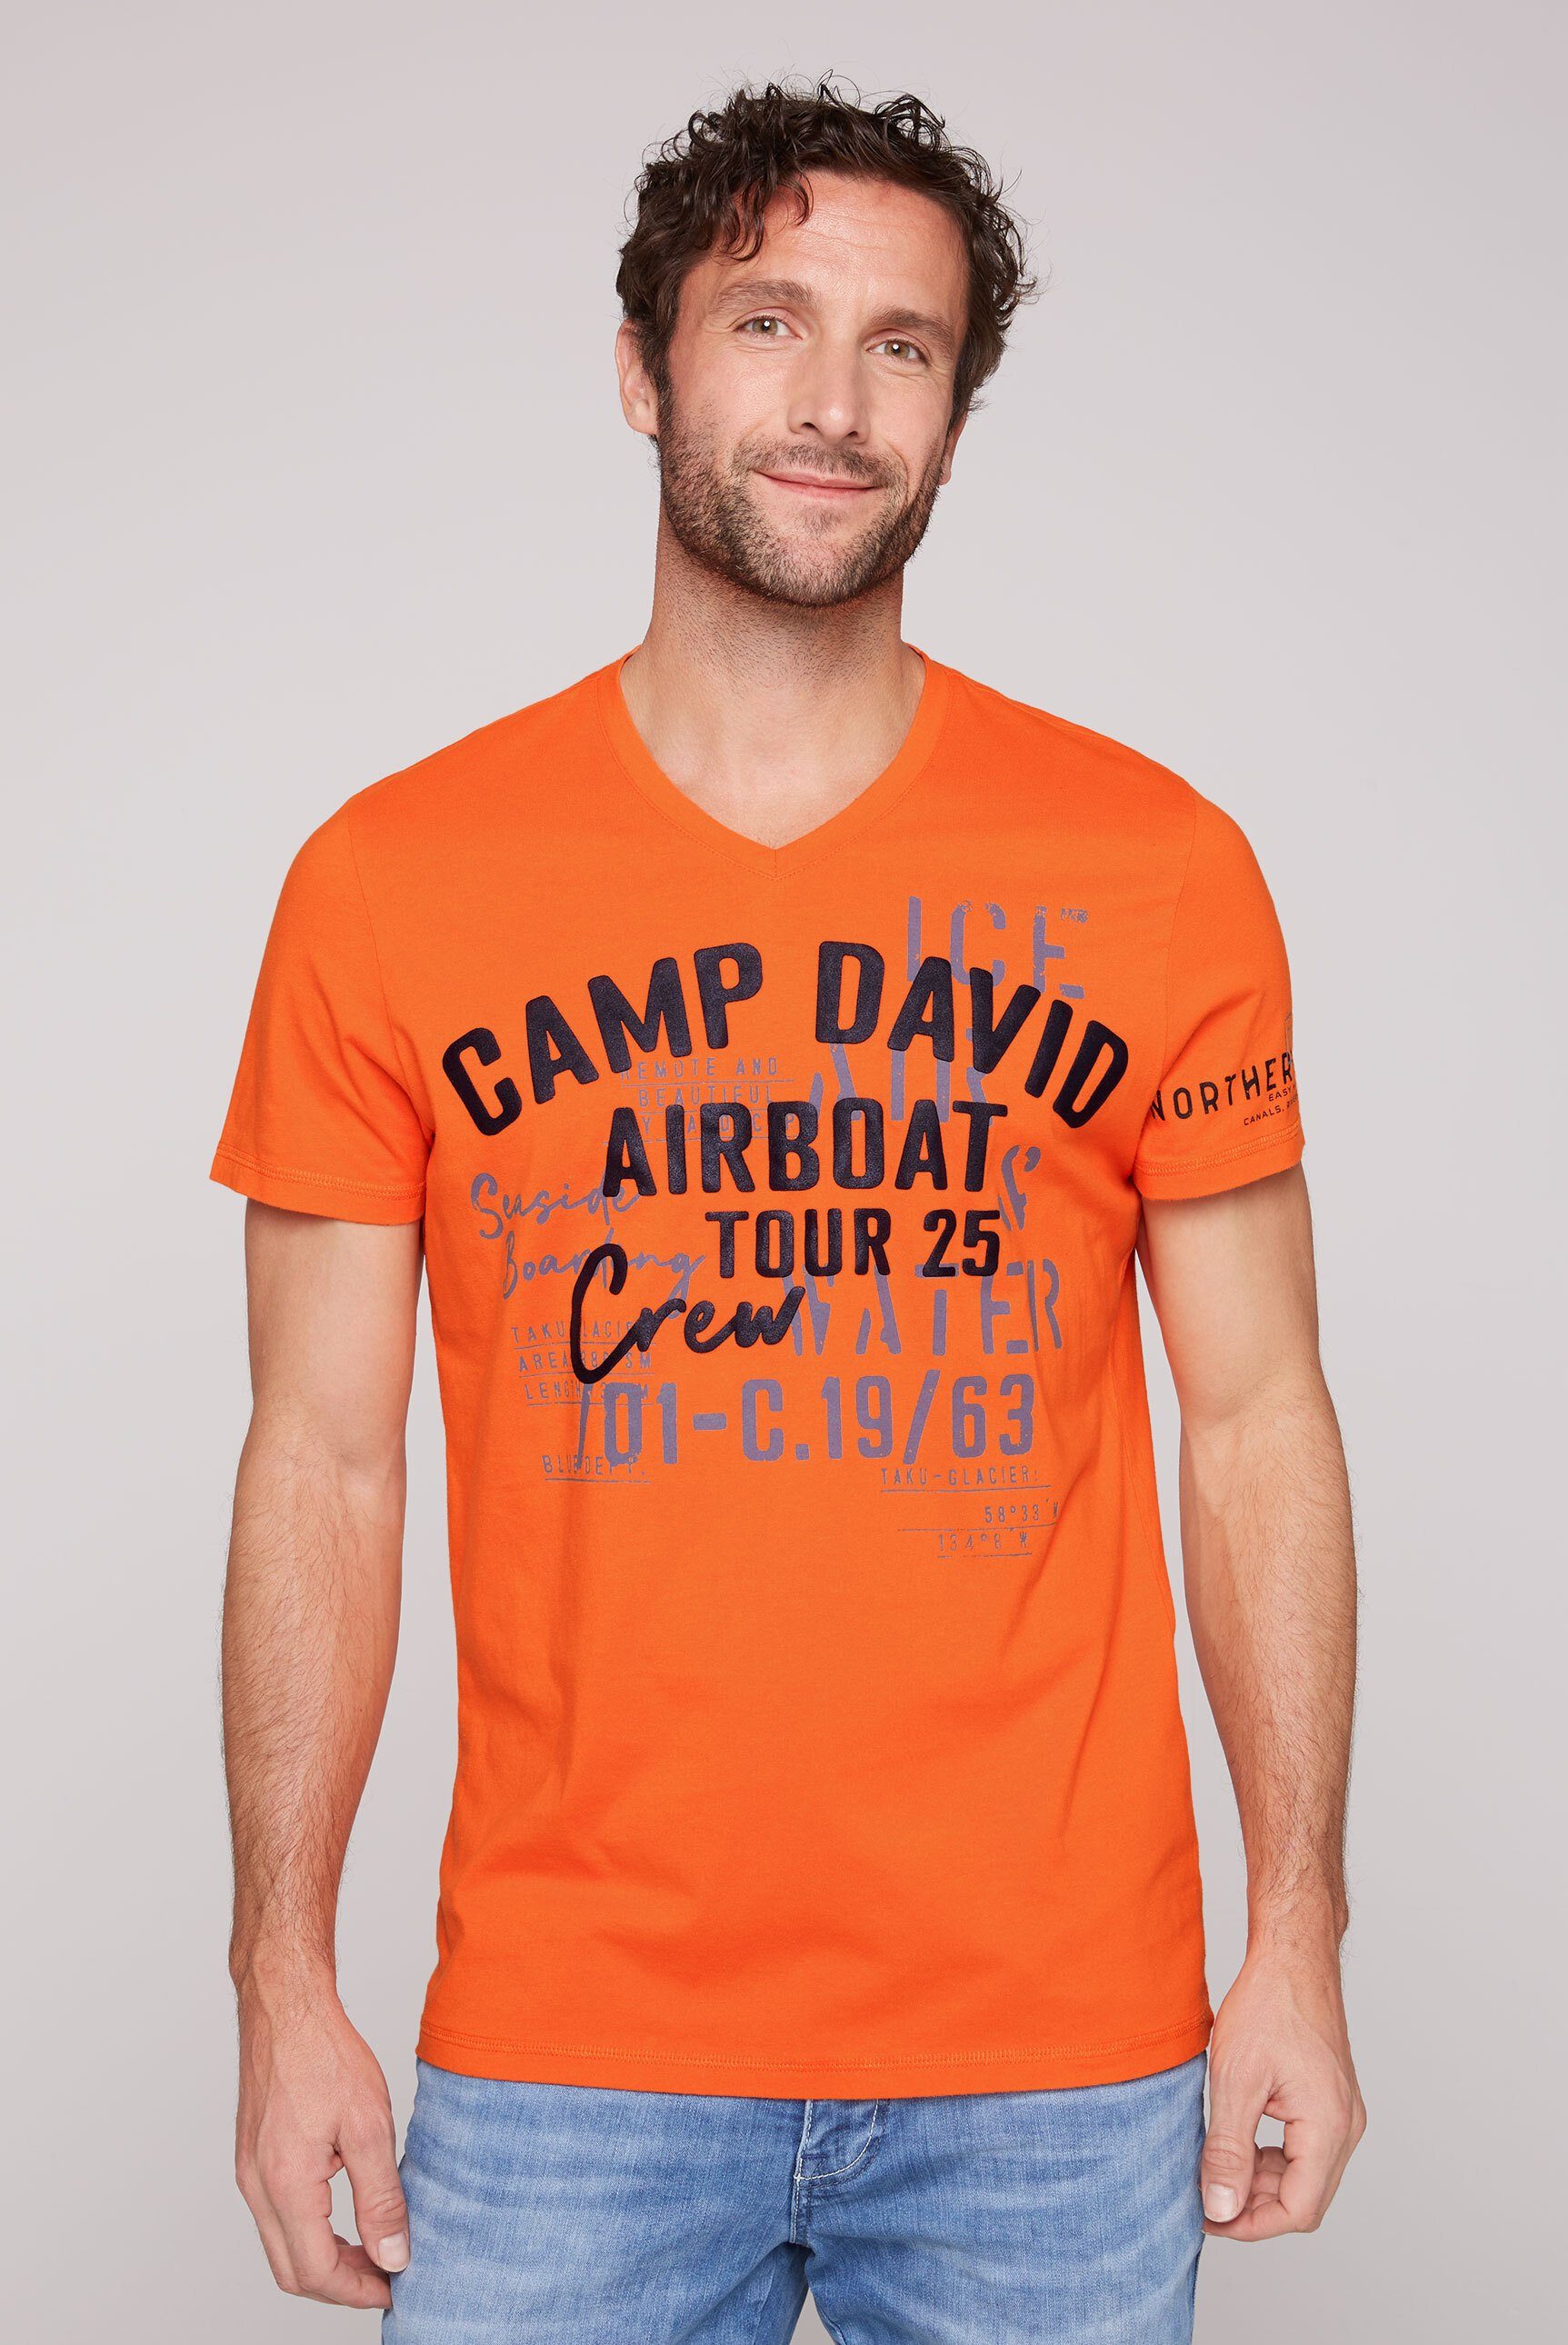 CAMP DAVID V-Shirt aus orange Baumwolle misssion